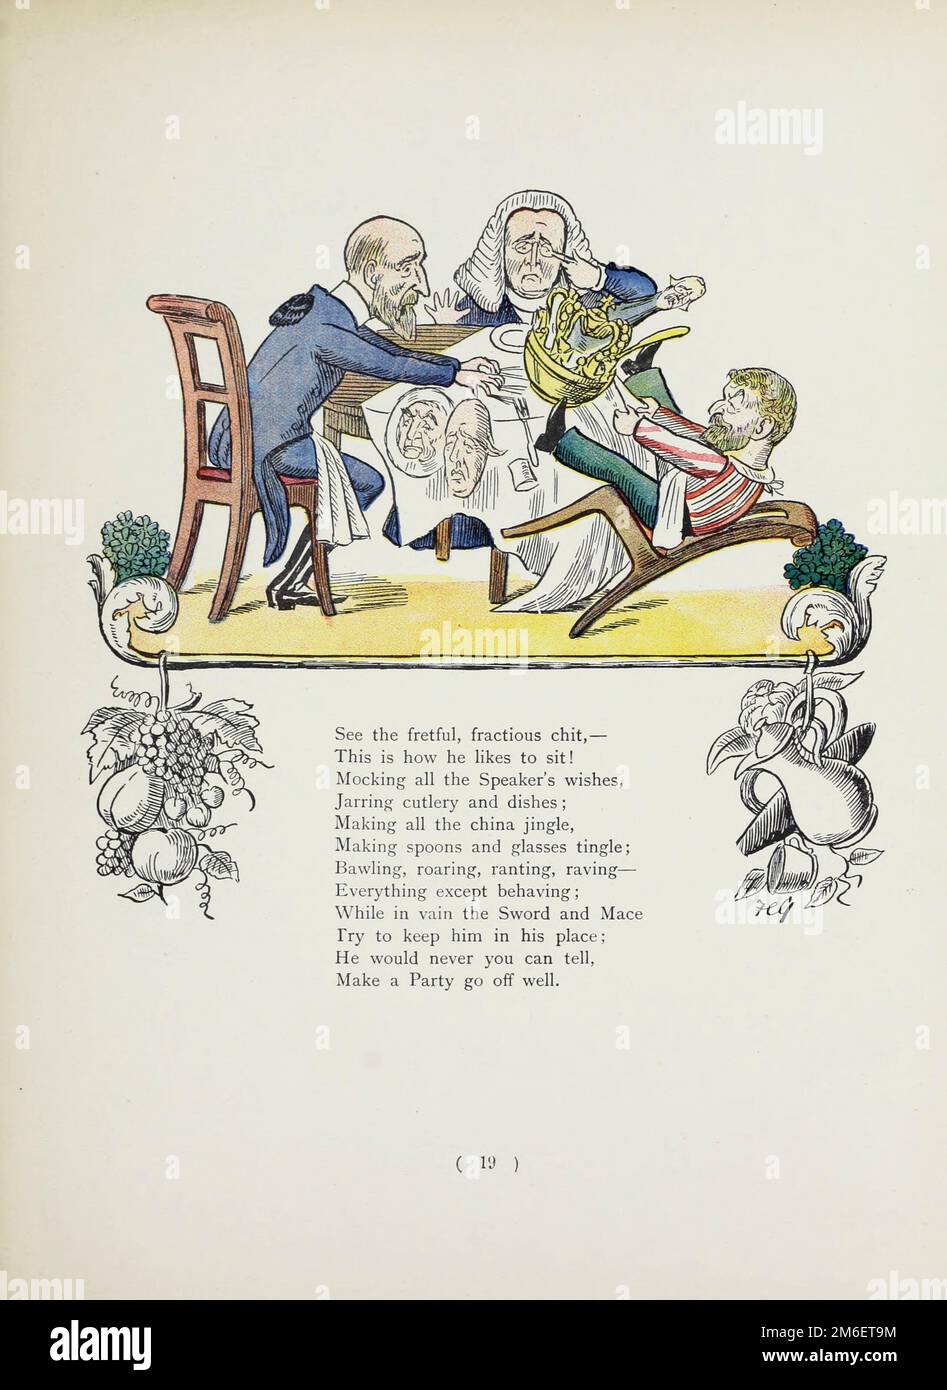 The Story of Rackety Tanner aus dem satirischen Buch " The Political Struwwelpeter " von Harold Begbie, 1871-1929, illustriert von Francis Carruthers Gould, 1844-1925, veröffentlicht in London : Grant Richards 1899 Stockfoto